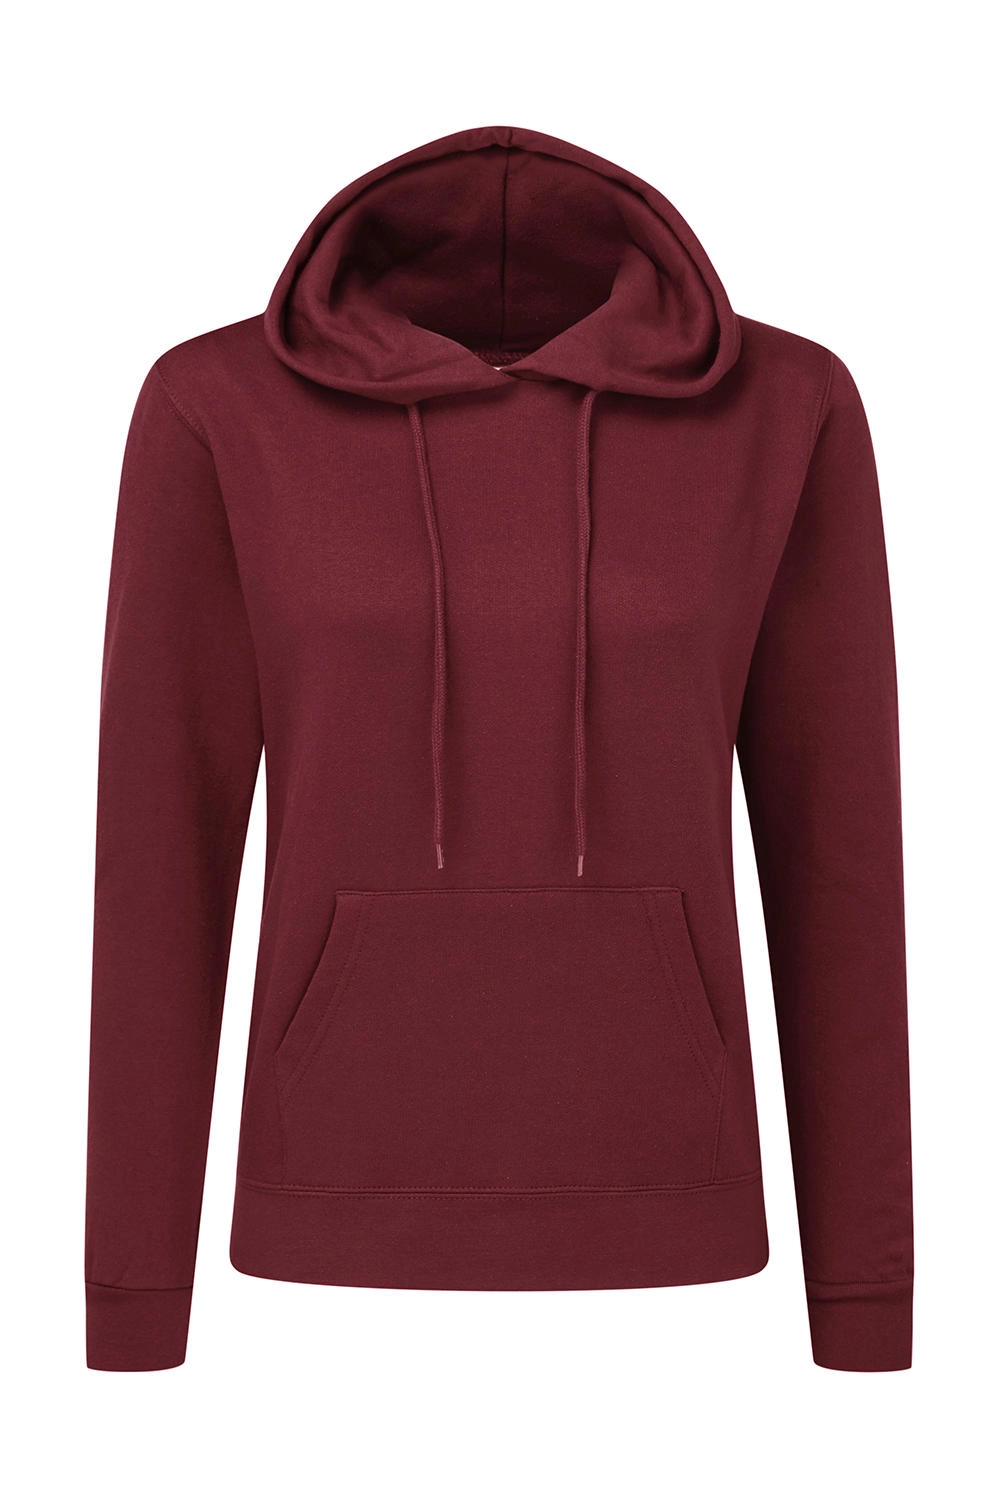 Hooded Sweatshirt Women zum Besticken und Bedrucken in der Farbe Burgundy mit Ihren Logo, Schriftzug oder Motiv.